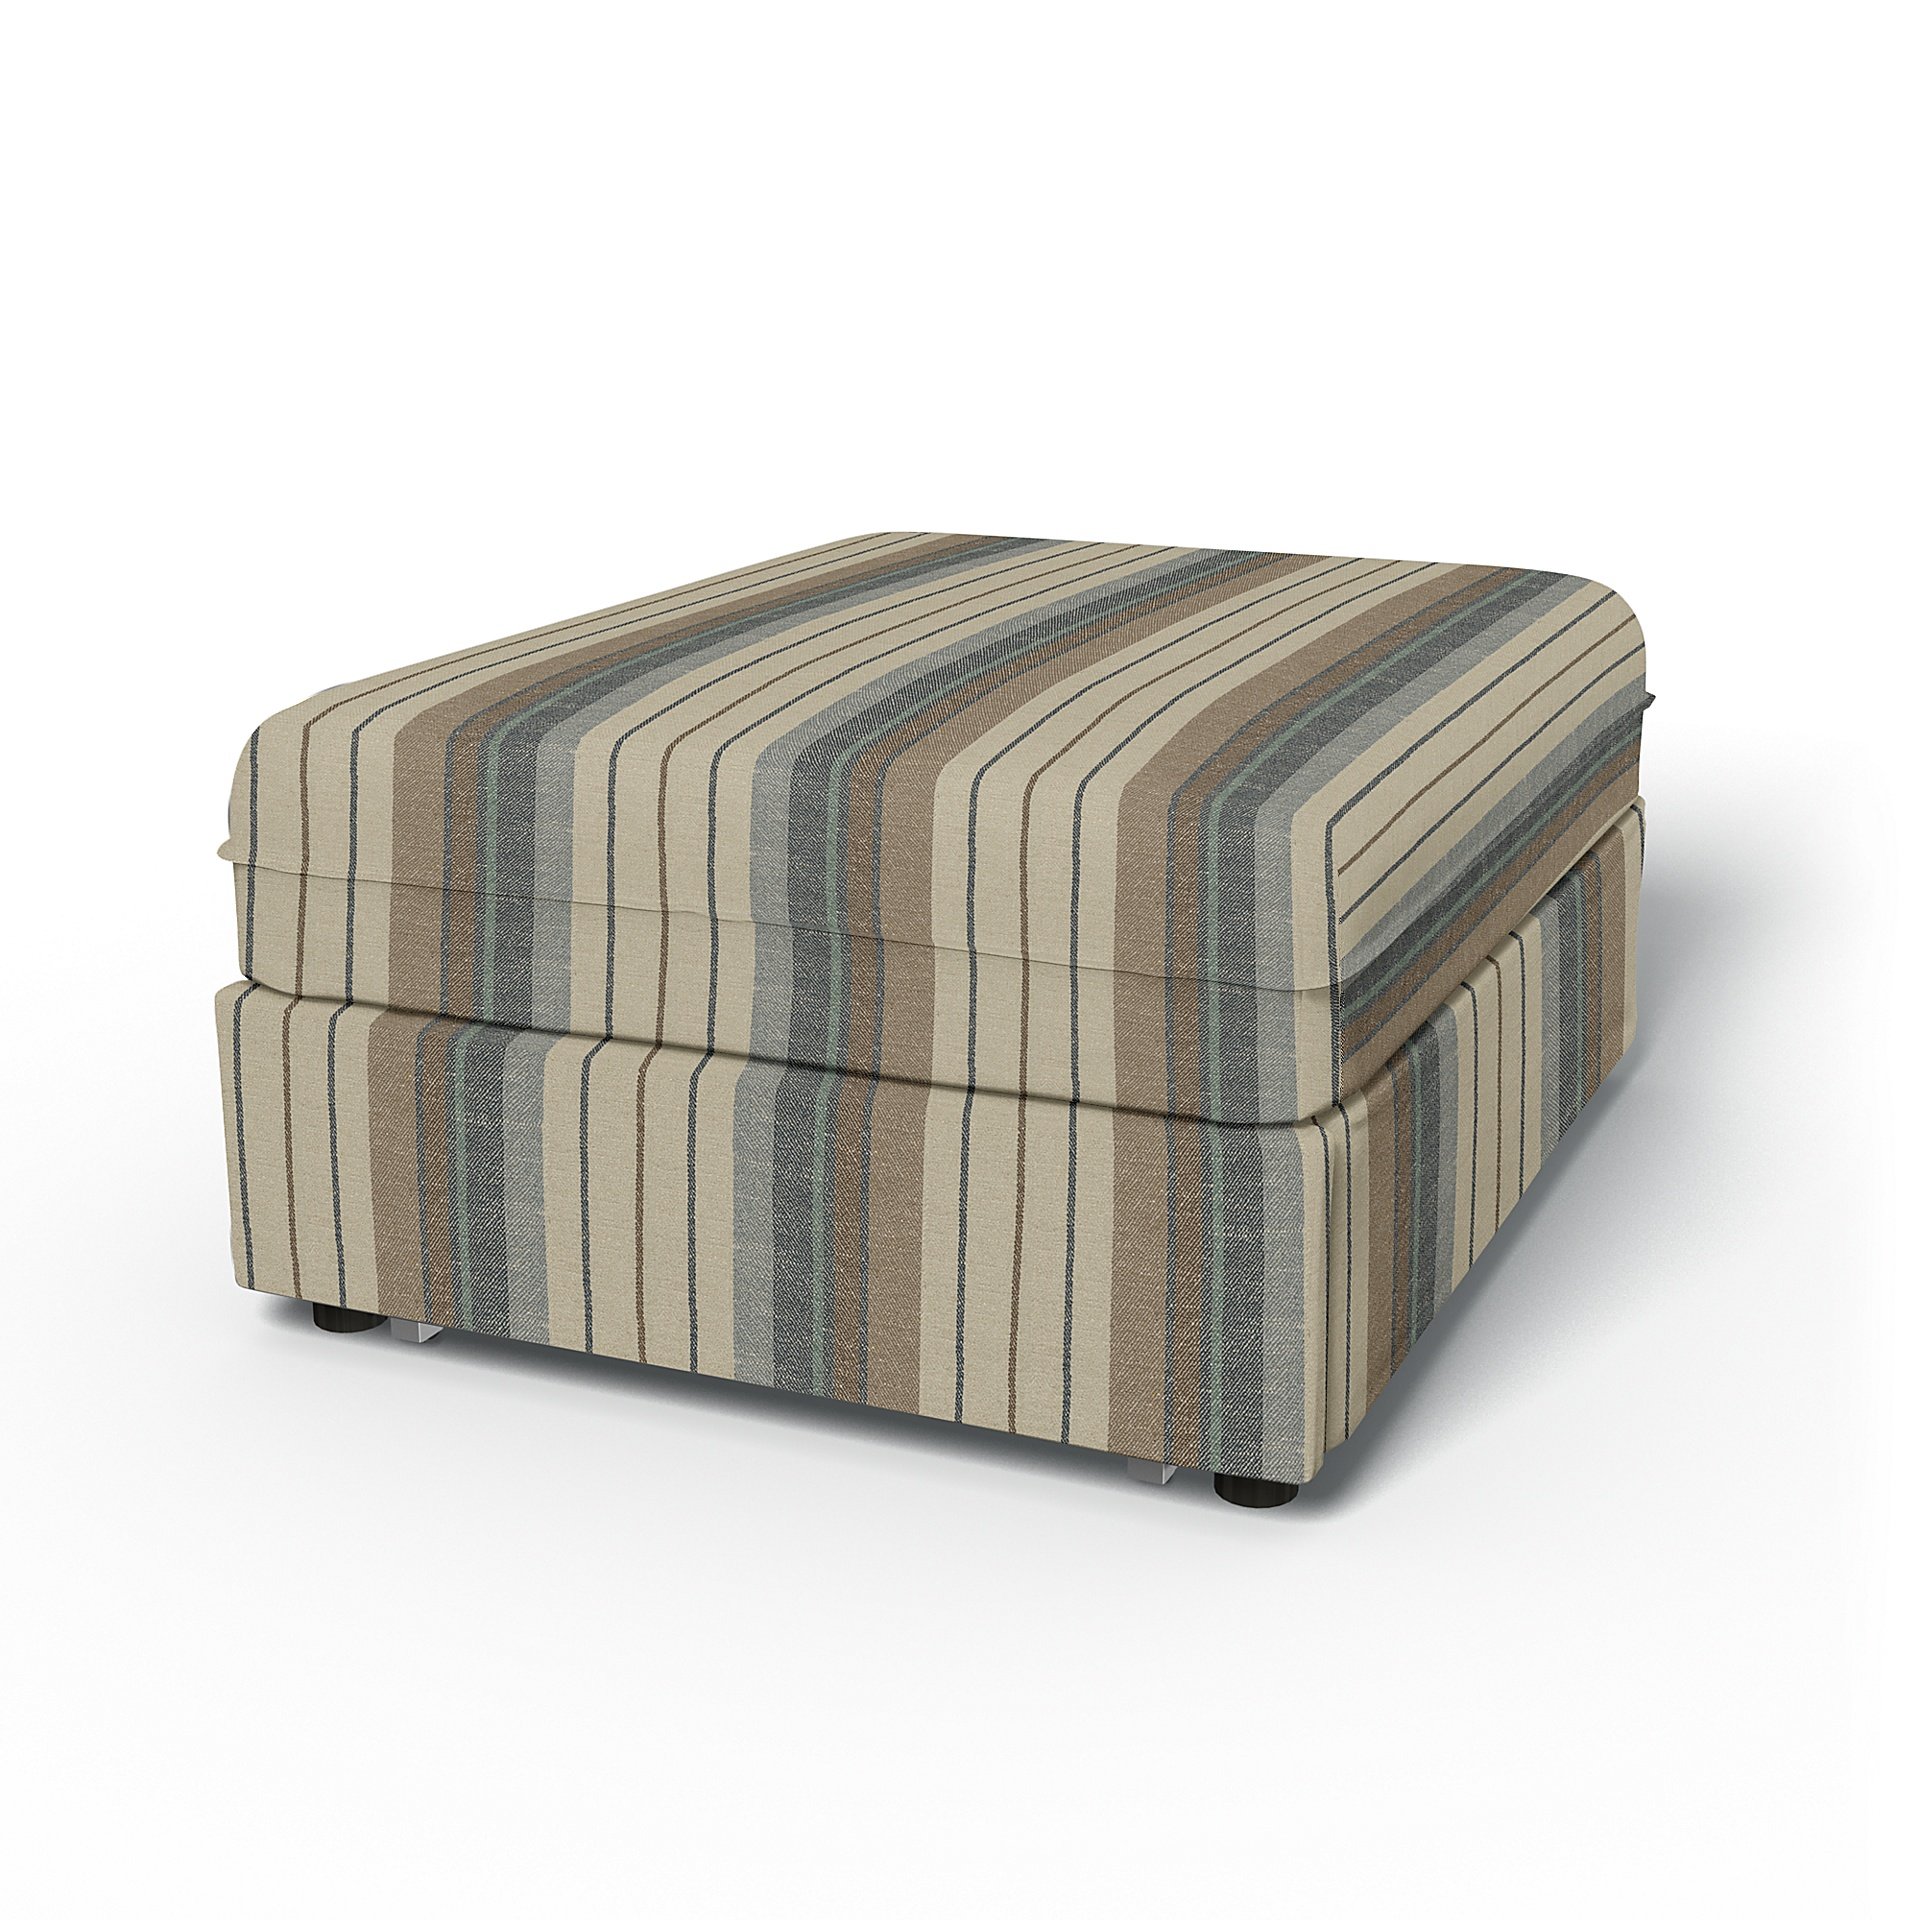 IKEA - Vallentuna Seat Module with Sofa Bed Cover 80x100cm 32x39in, Soft Oak, Cotton - Bemz